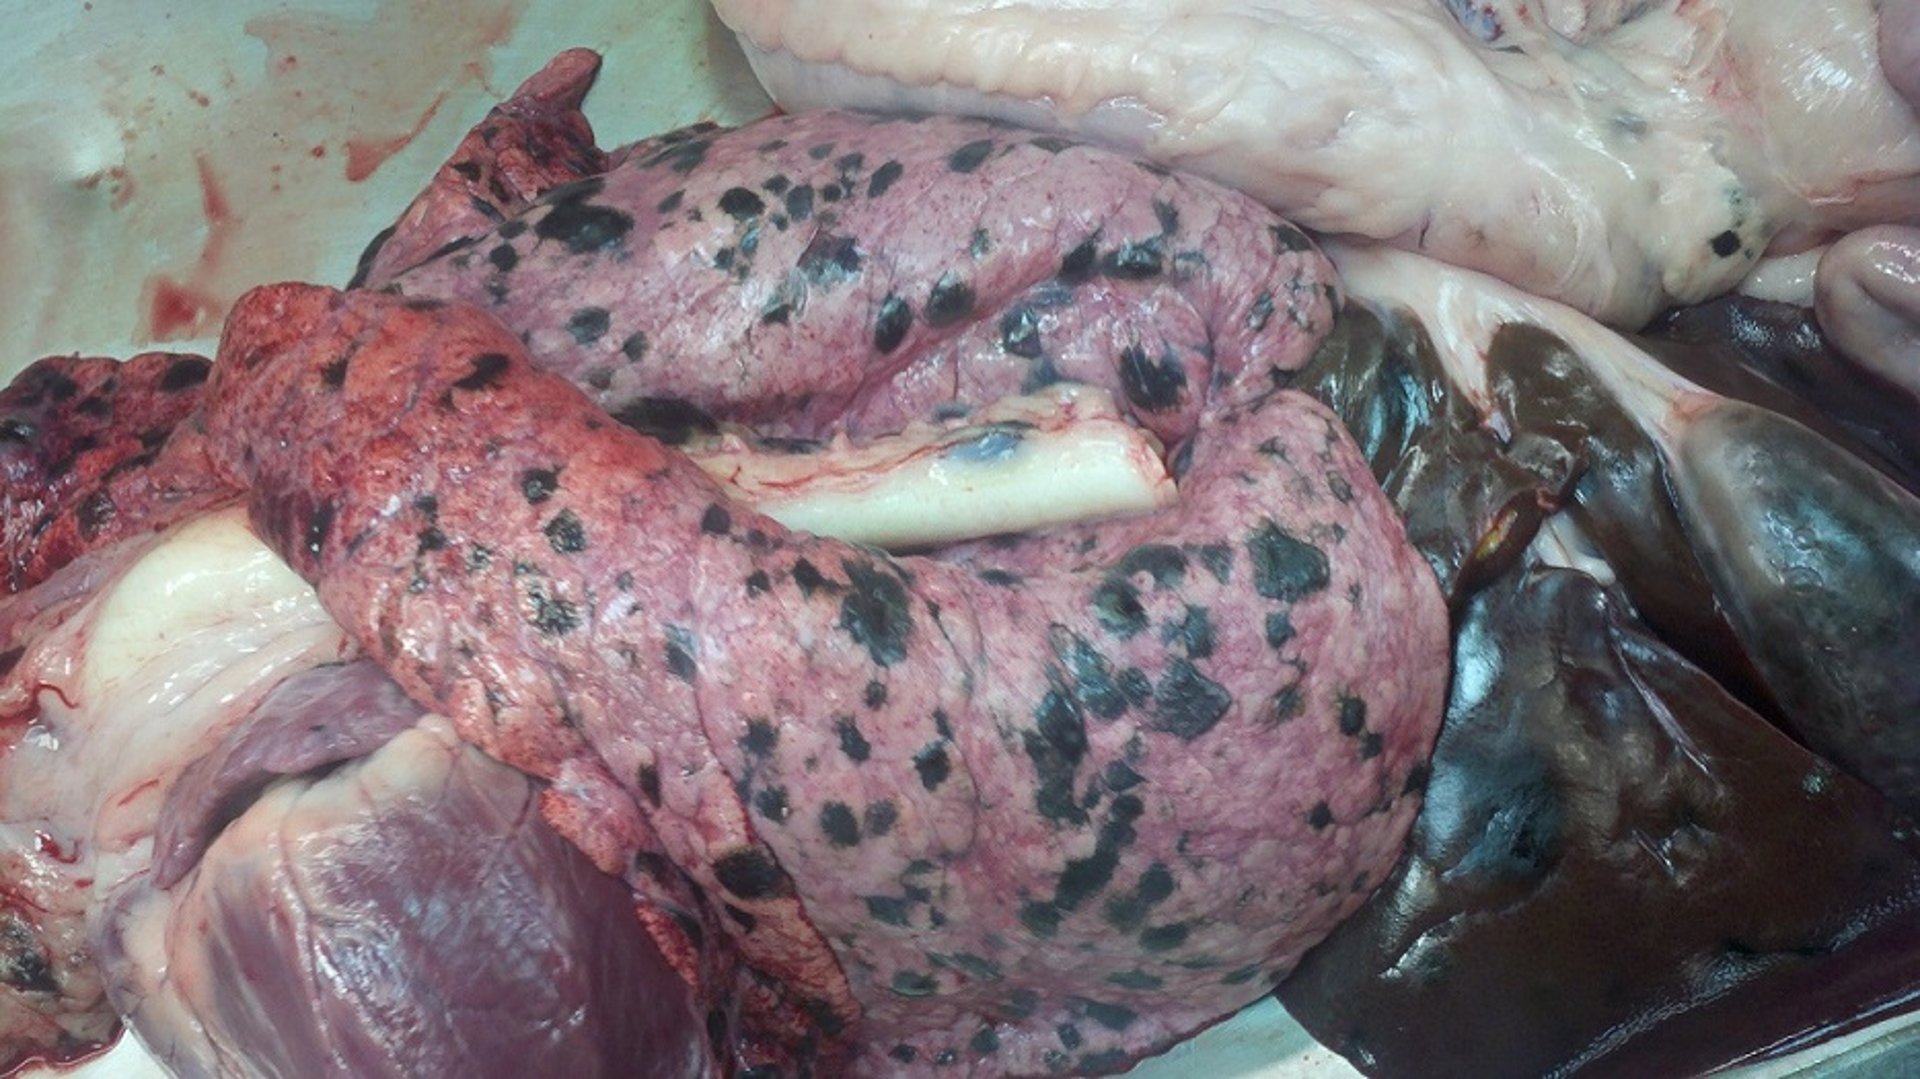 Metastasized melanoma, market hog